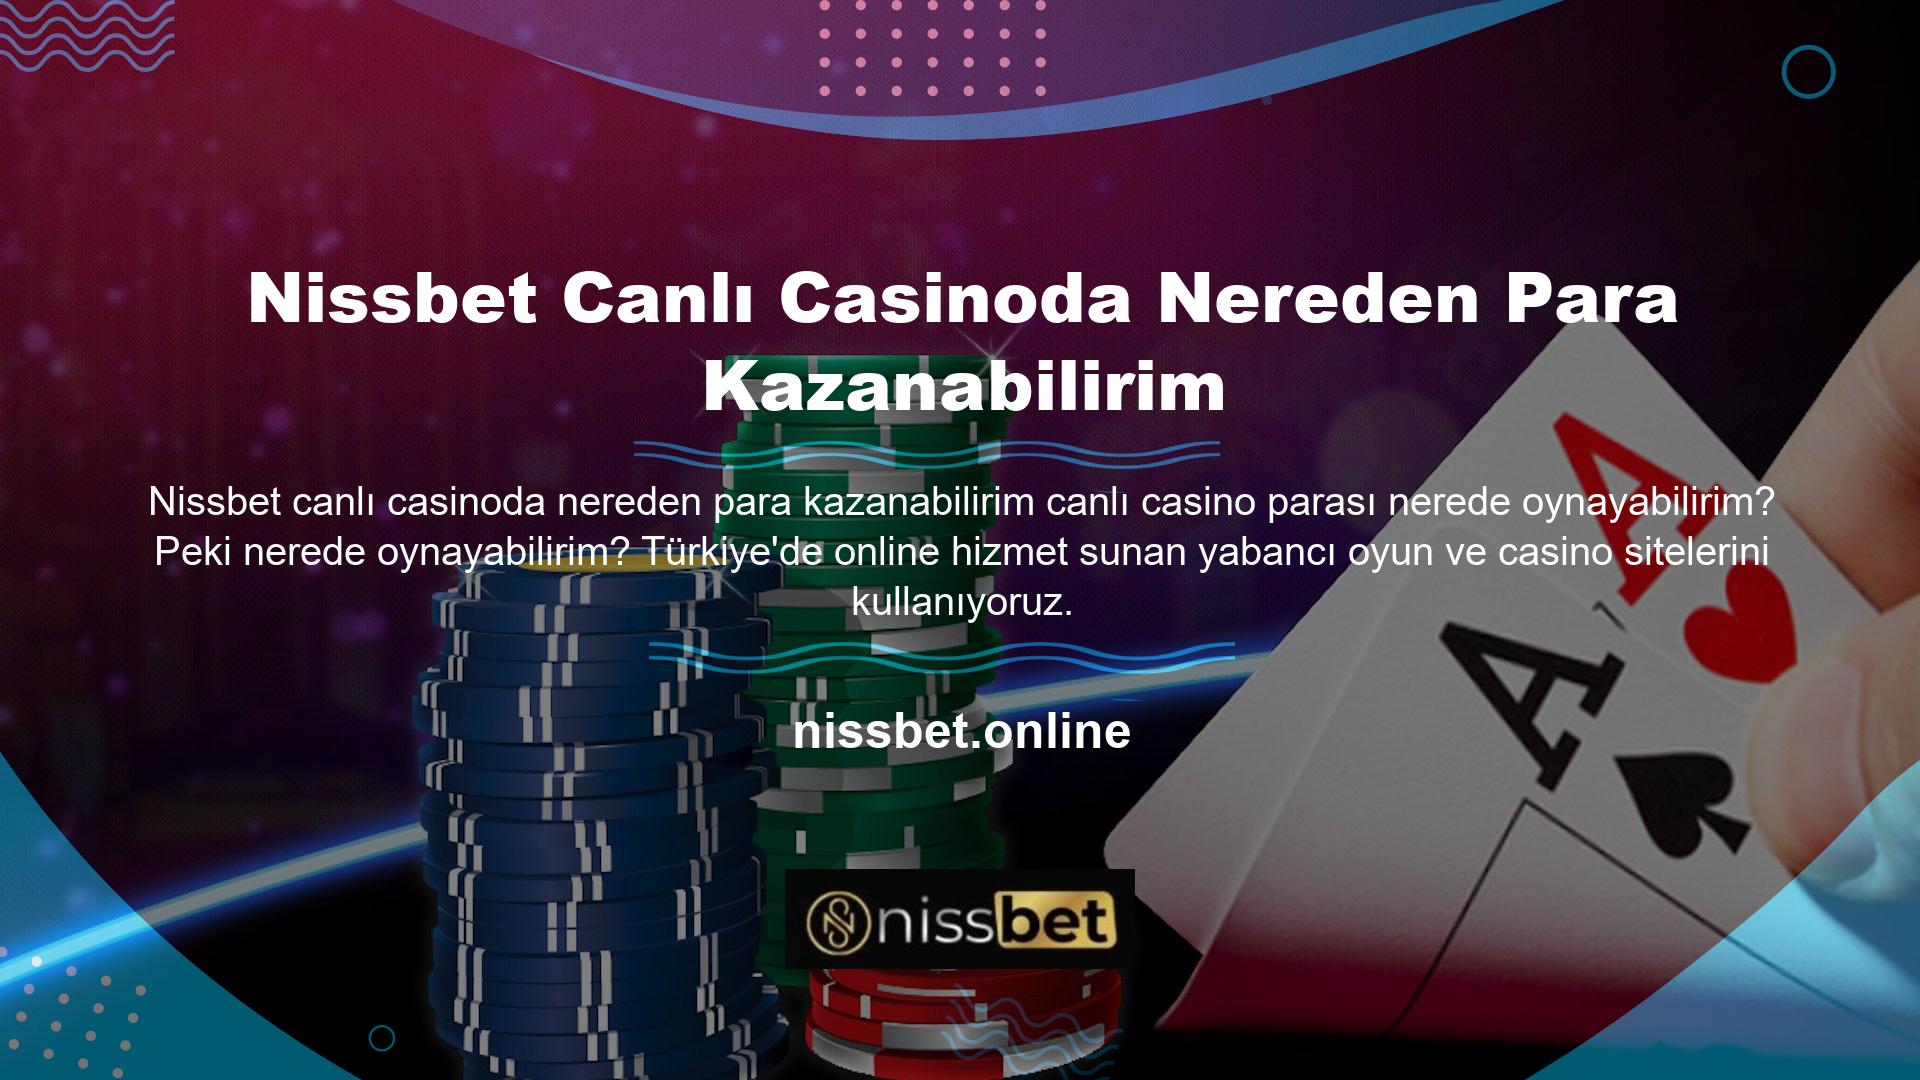 Türkiye'de ücretli casino oyunları aracılığıyla çevrimiçi hizmetler sunan çok sayıda farklı casino sitesi vardır